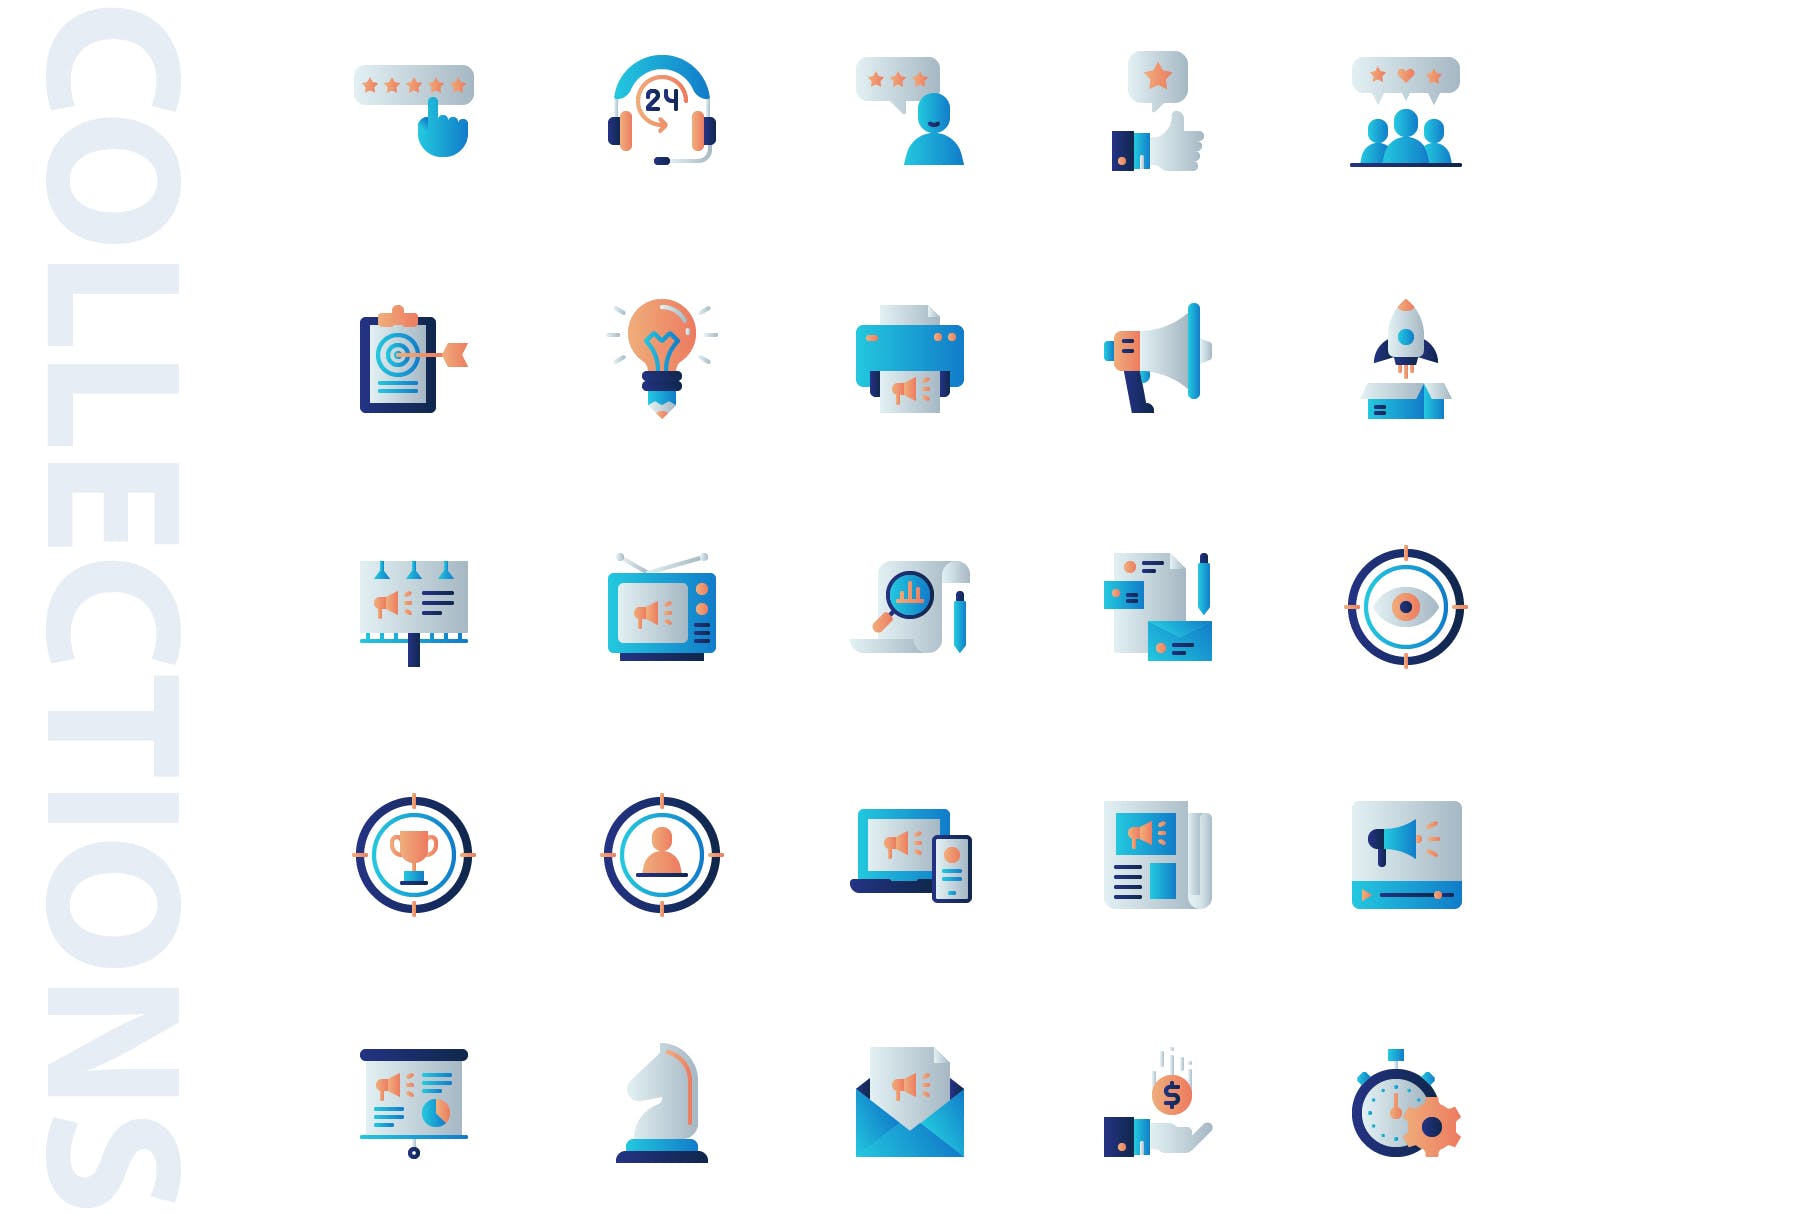 25枚市场营销主题扁平设计风格矢量素材库精选图标 Marketing Flat Icons插图(3)